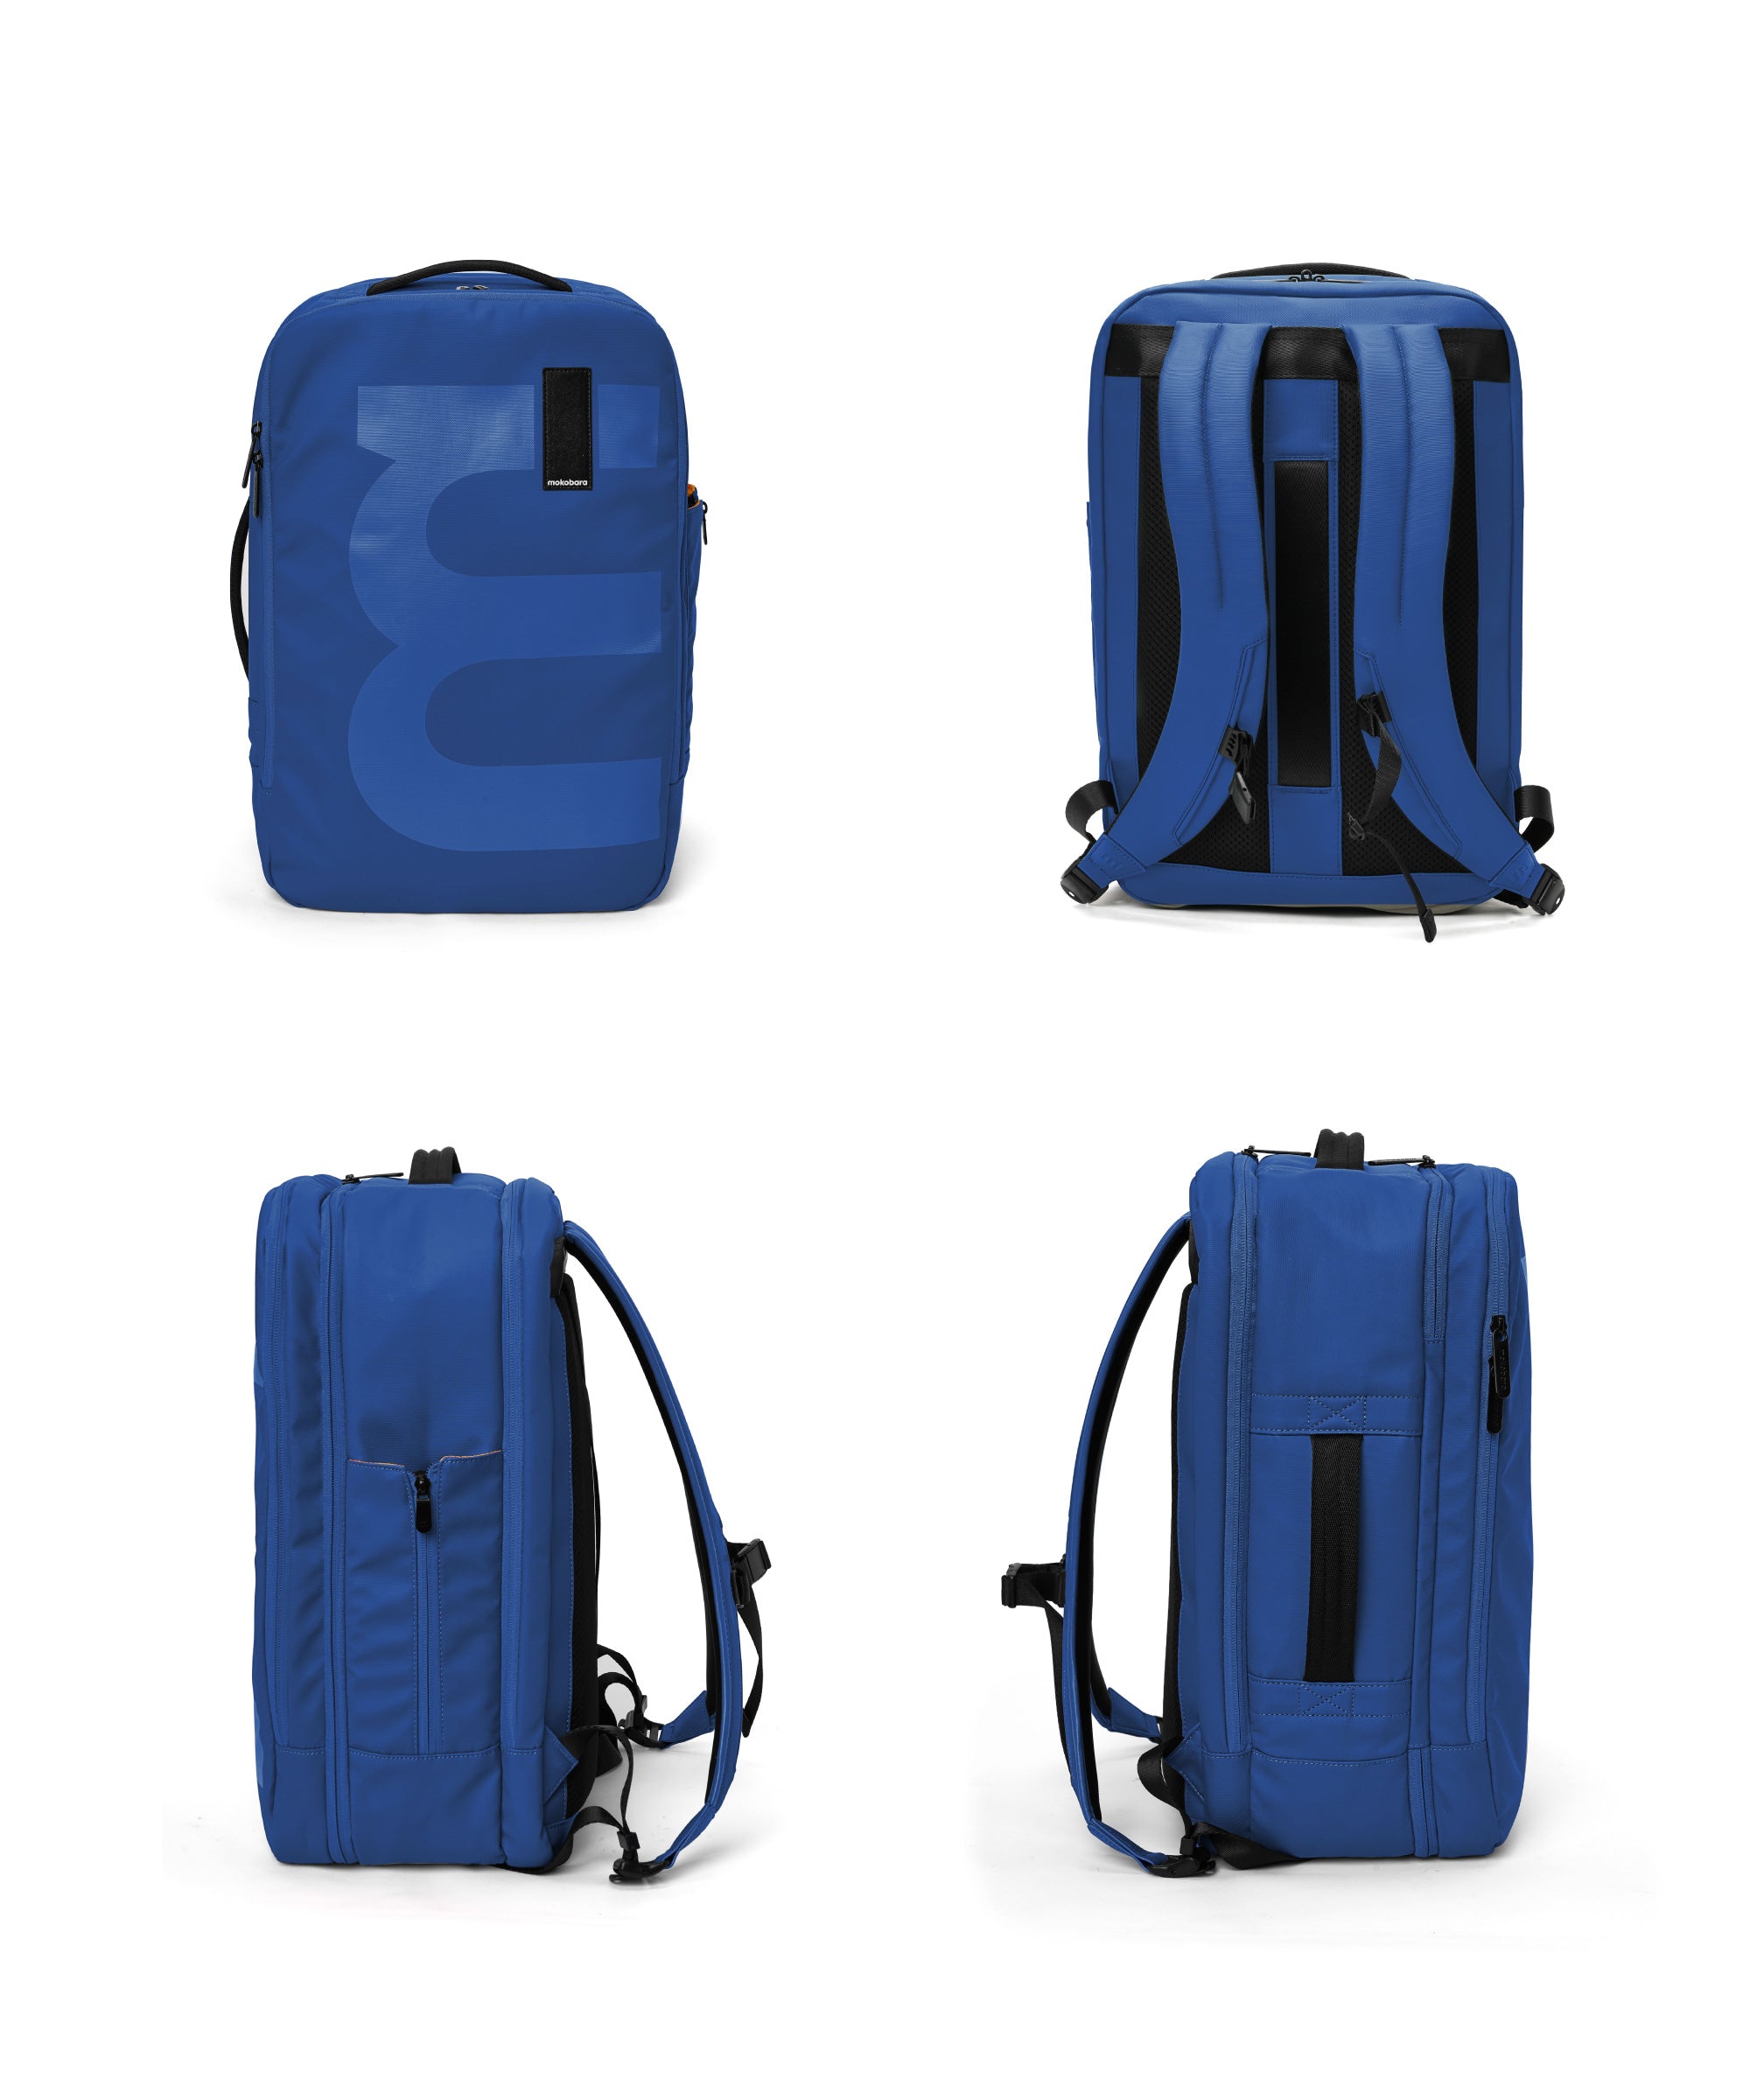 Color_Ocean 2.0 | The Em Travel Backpack - 45L